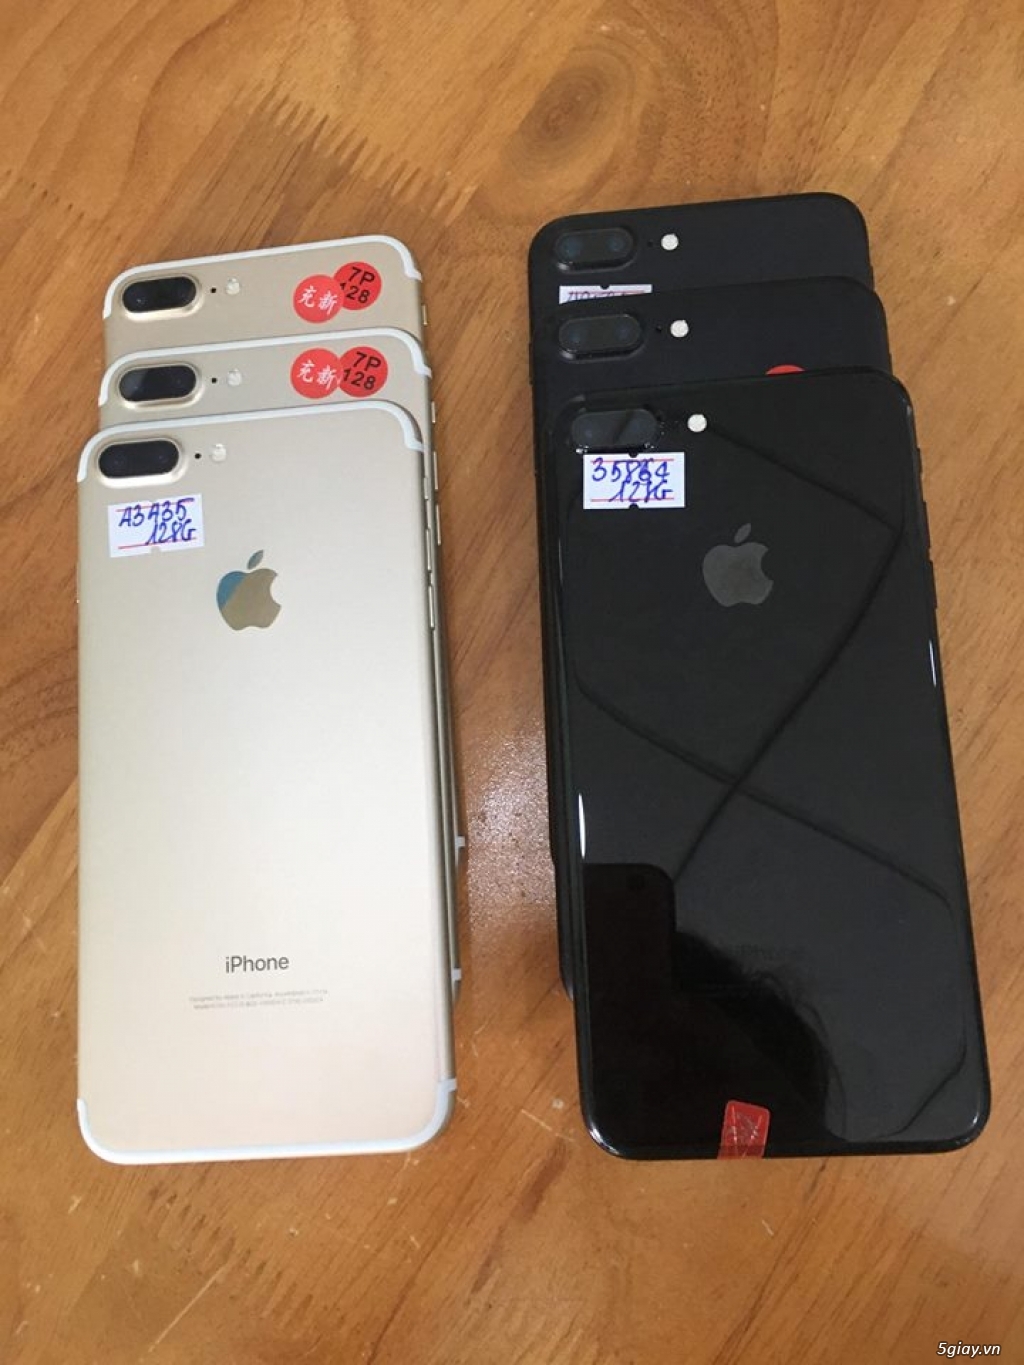 iPhone 7 Plus 128g  Vàng Đen Trắng Hồng Quốc Tế Zin Đẹp 99,9%!